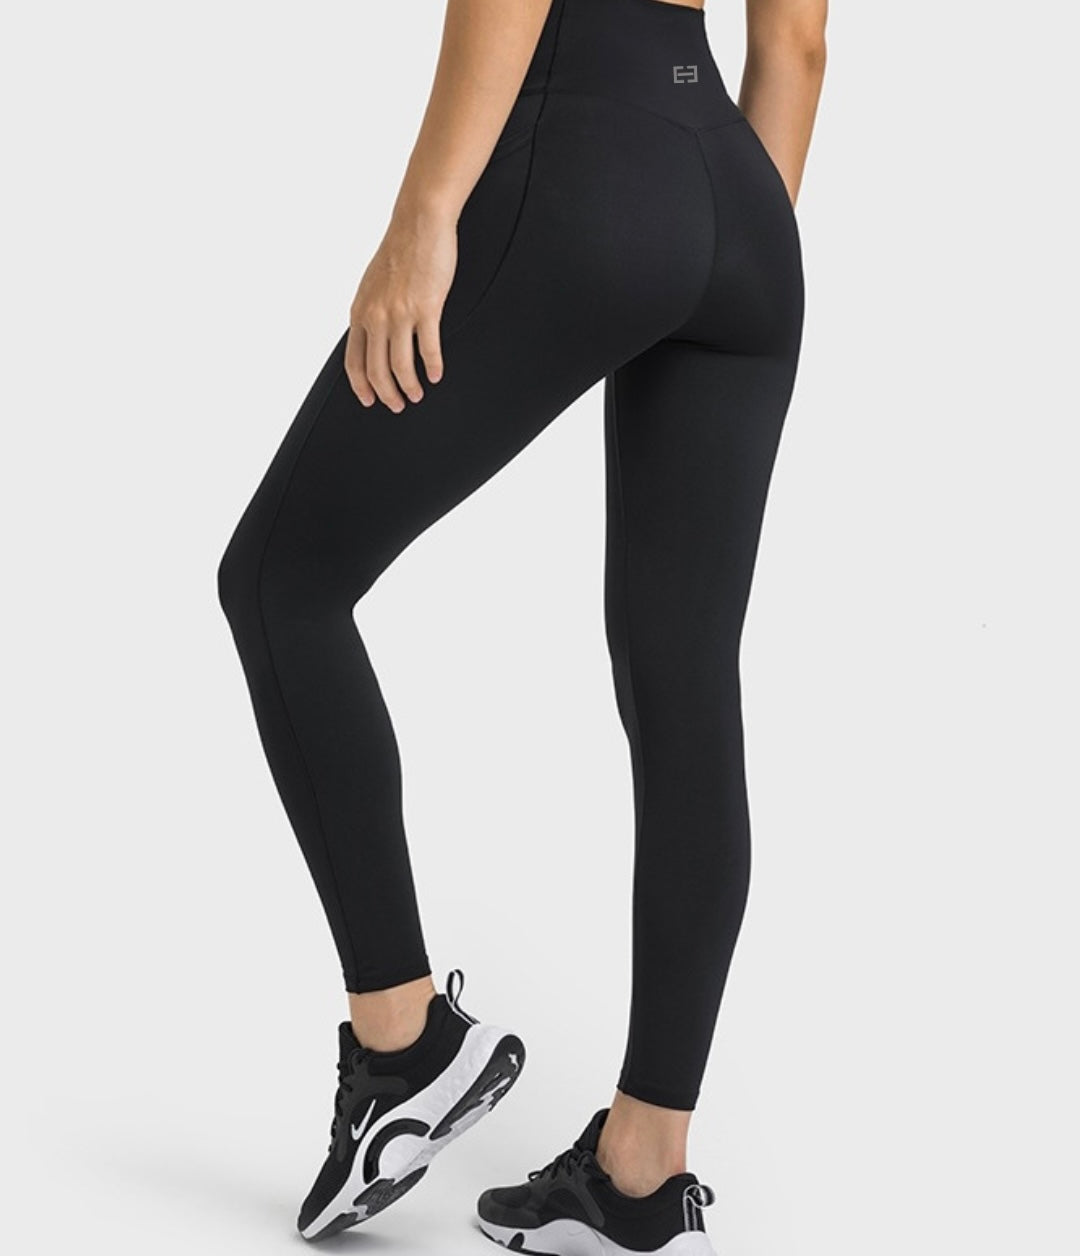 Buy Womens LeggingsHigh Waisted Black Leggings for WomenPremium Jeggings  for Workout Yoga at Amazonin